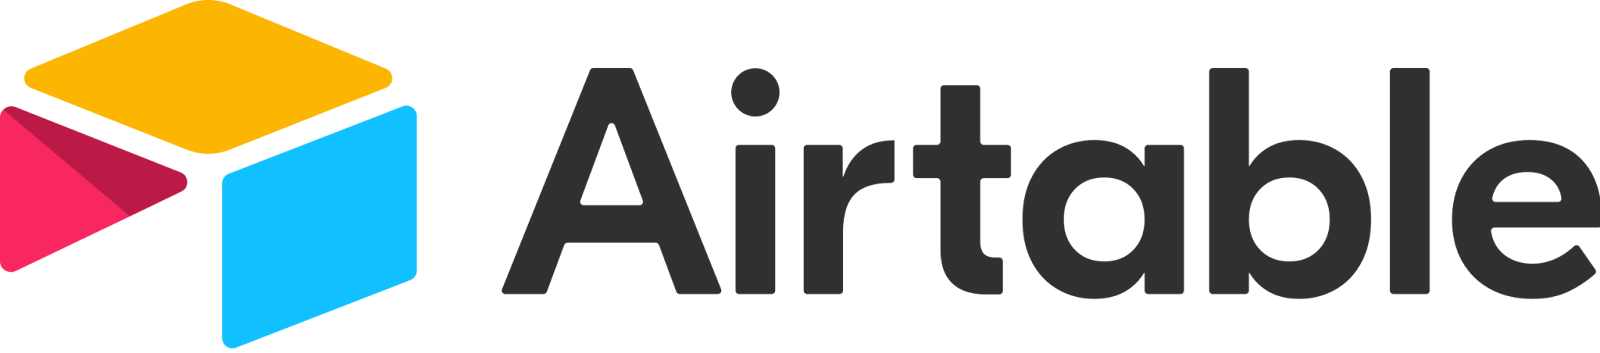 airtable's logo